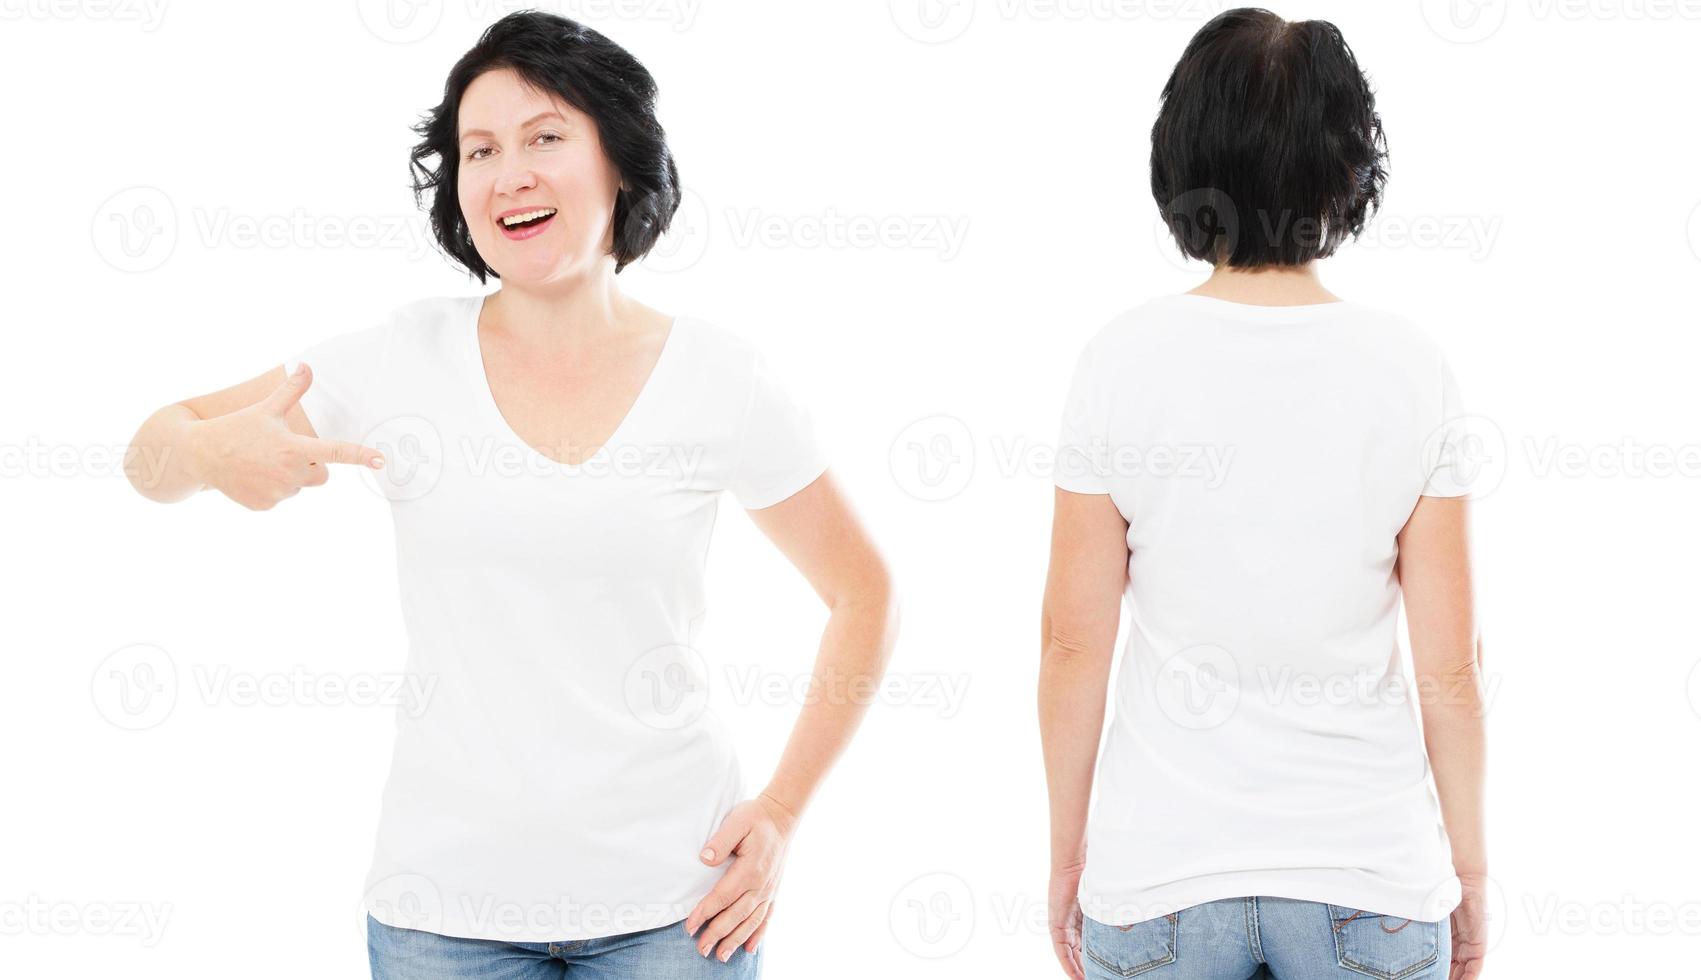 t-shirt design e conceito de pessoas - close-up de linda mulher morena em t-shirt branca em branco, camisa frente e verso isoladas. mock up, copie o espaço. foto